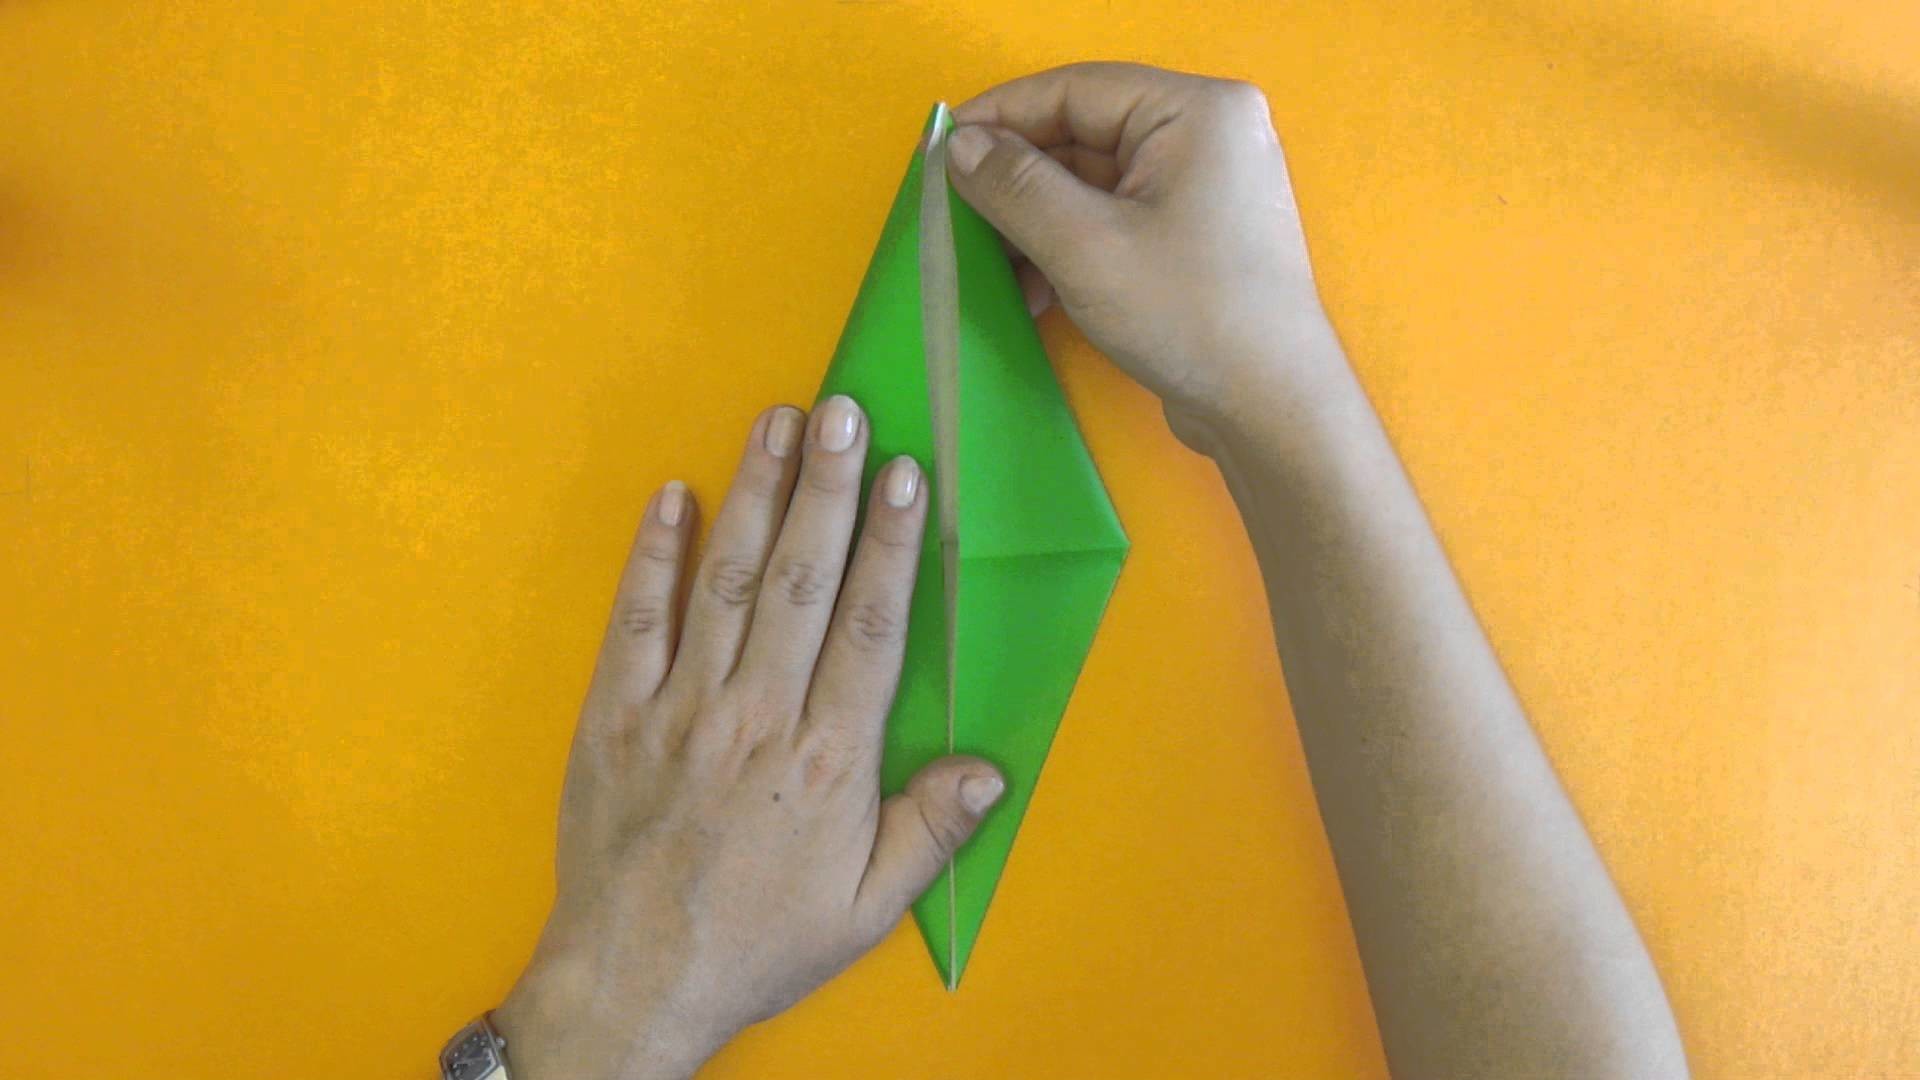 Como hacer una Grulla de Origami - Tutorial